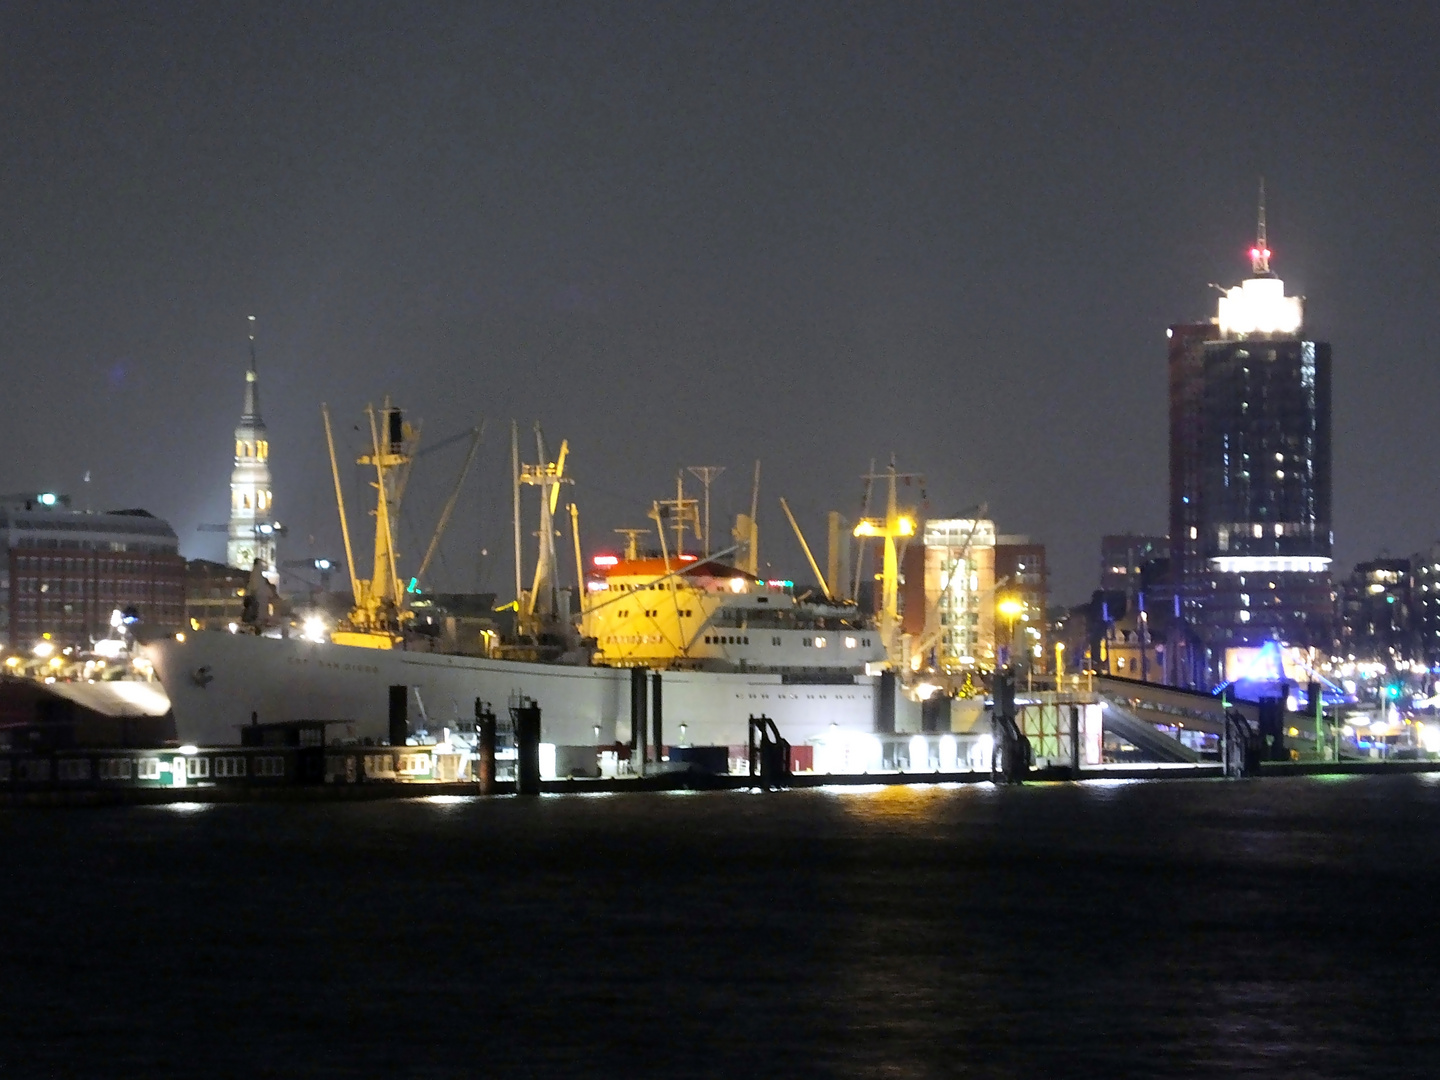 Hamburg by Night